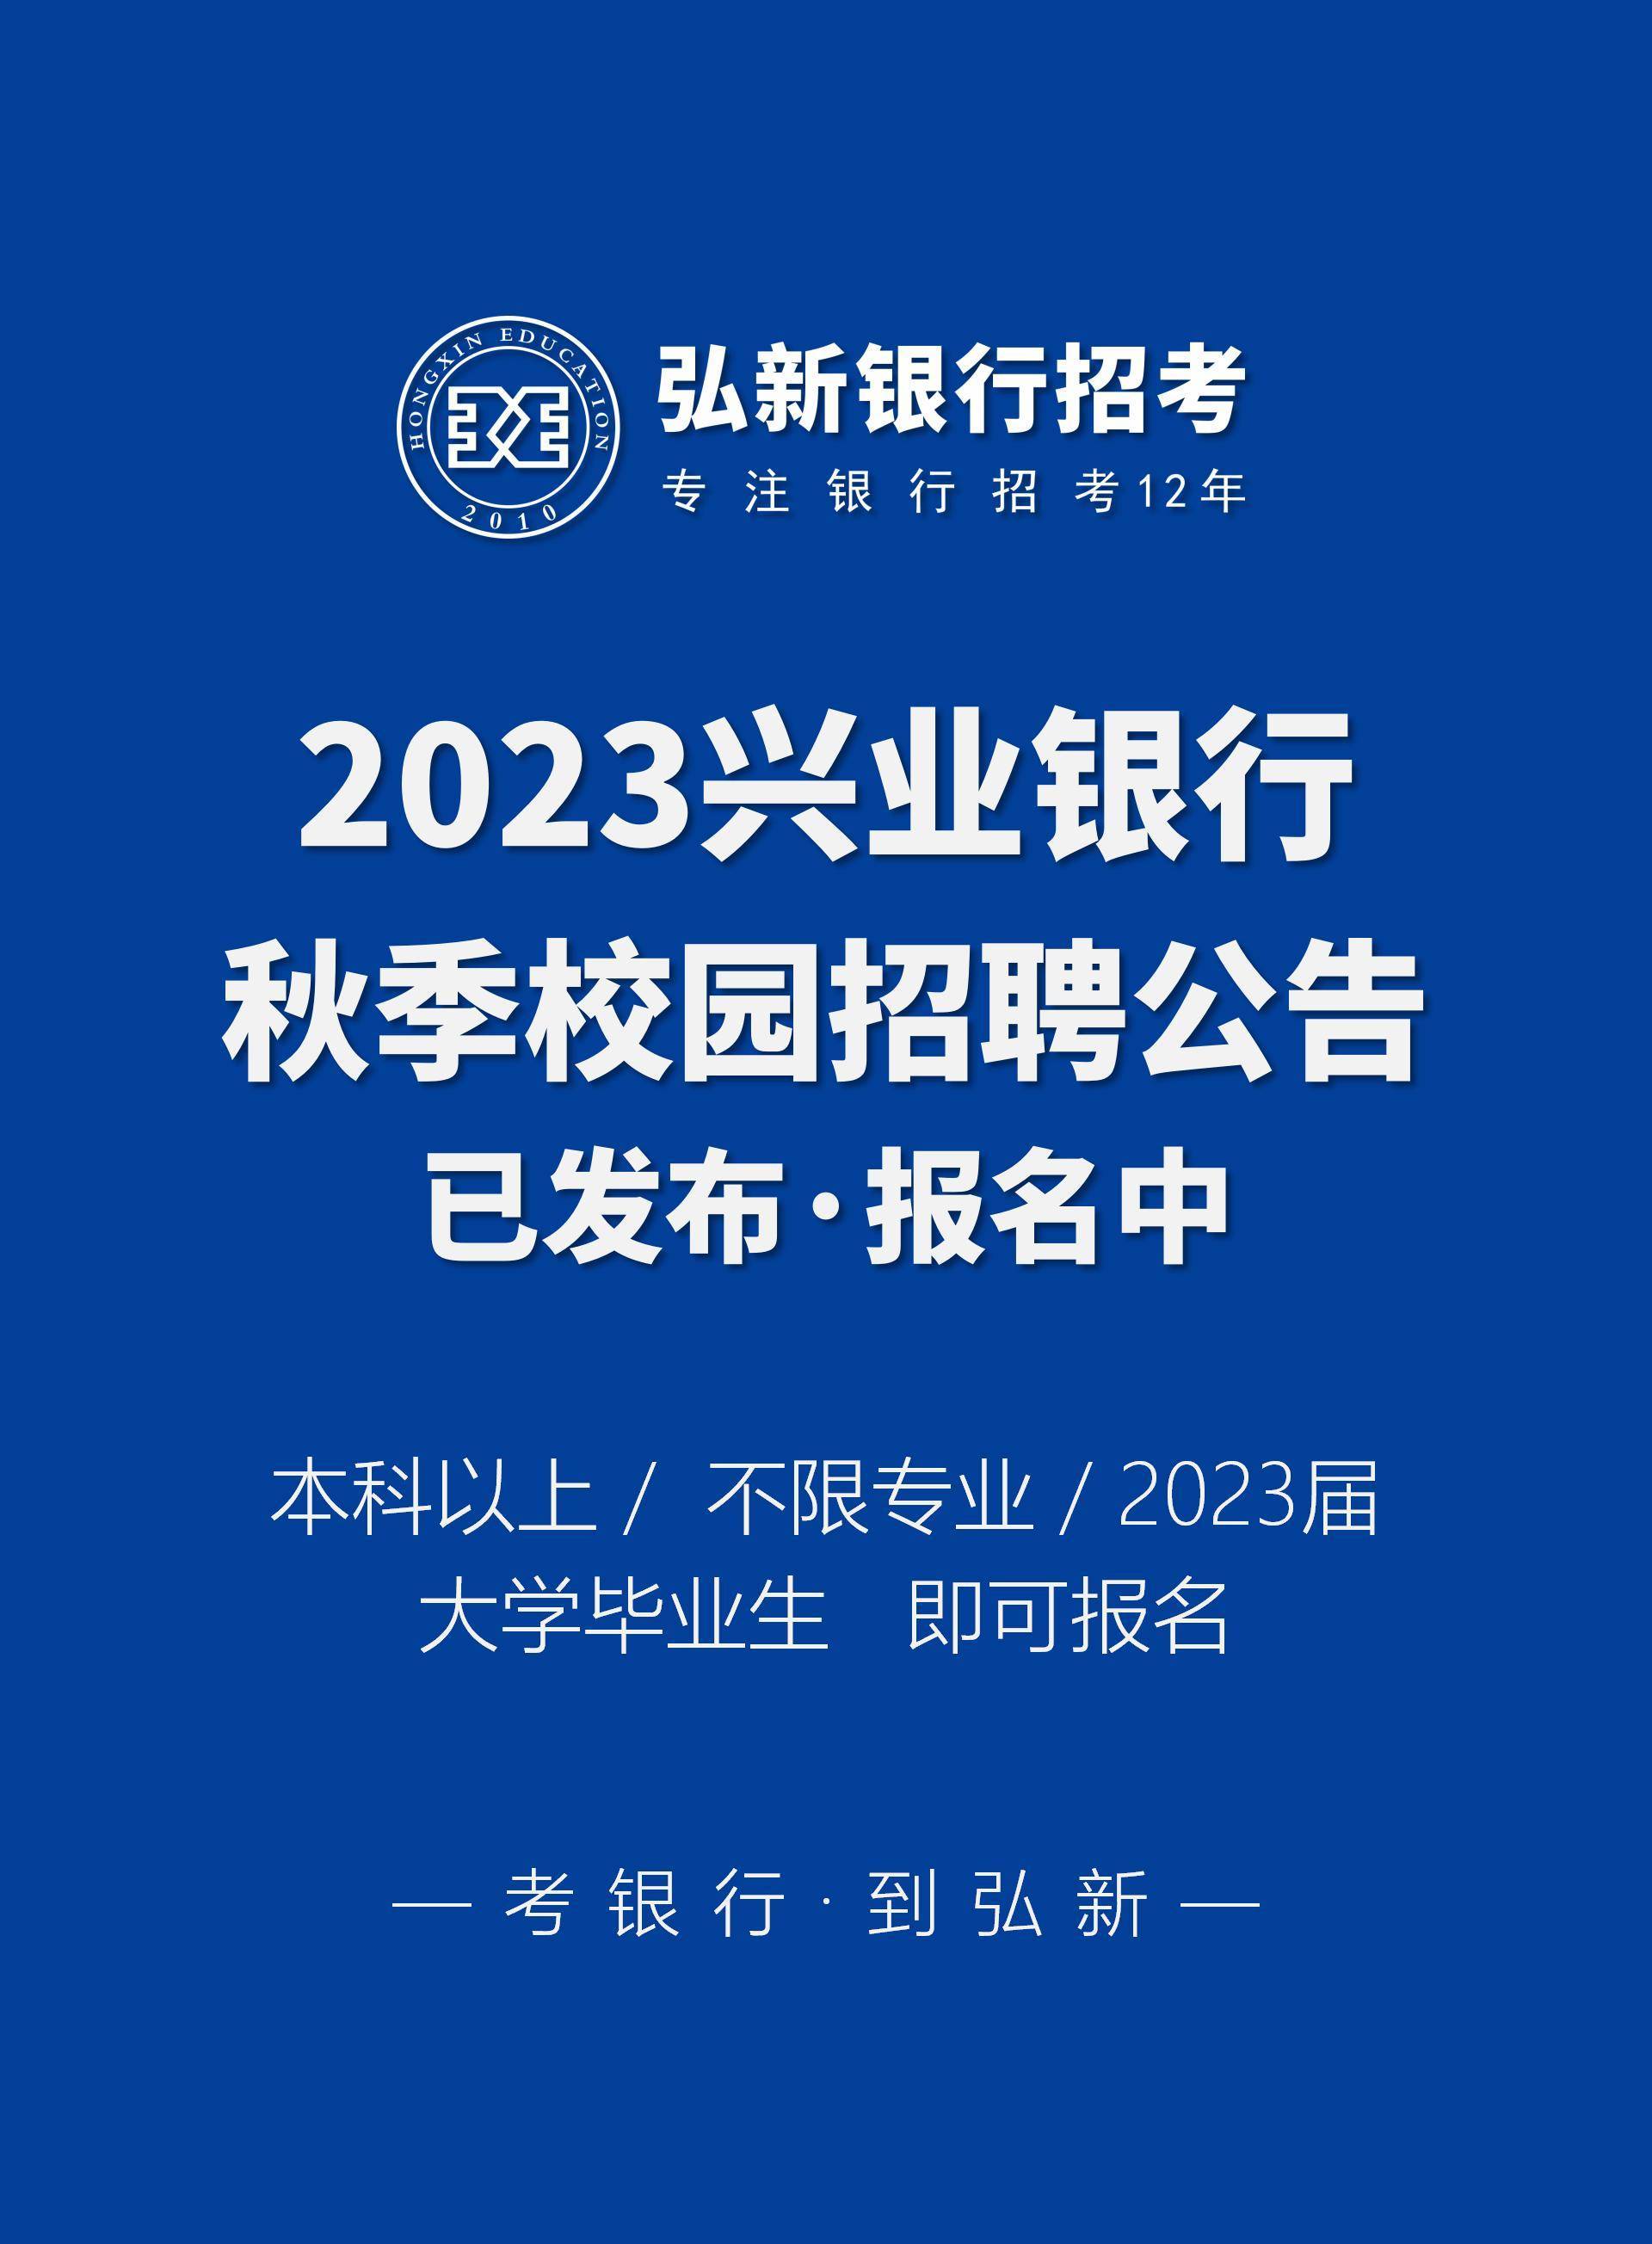 2023兴业银行秋季校园招聘公告发布,正在报名中